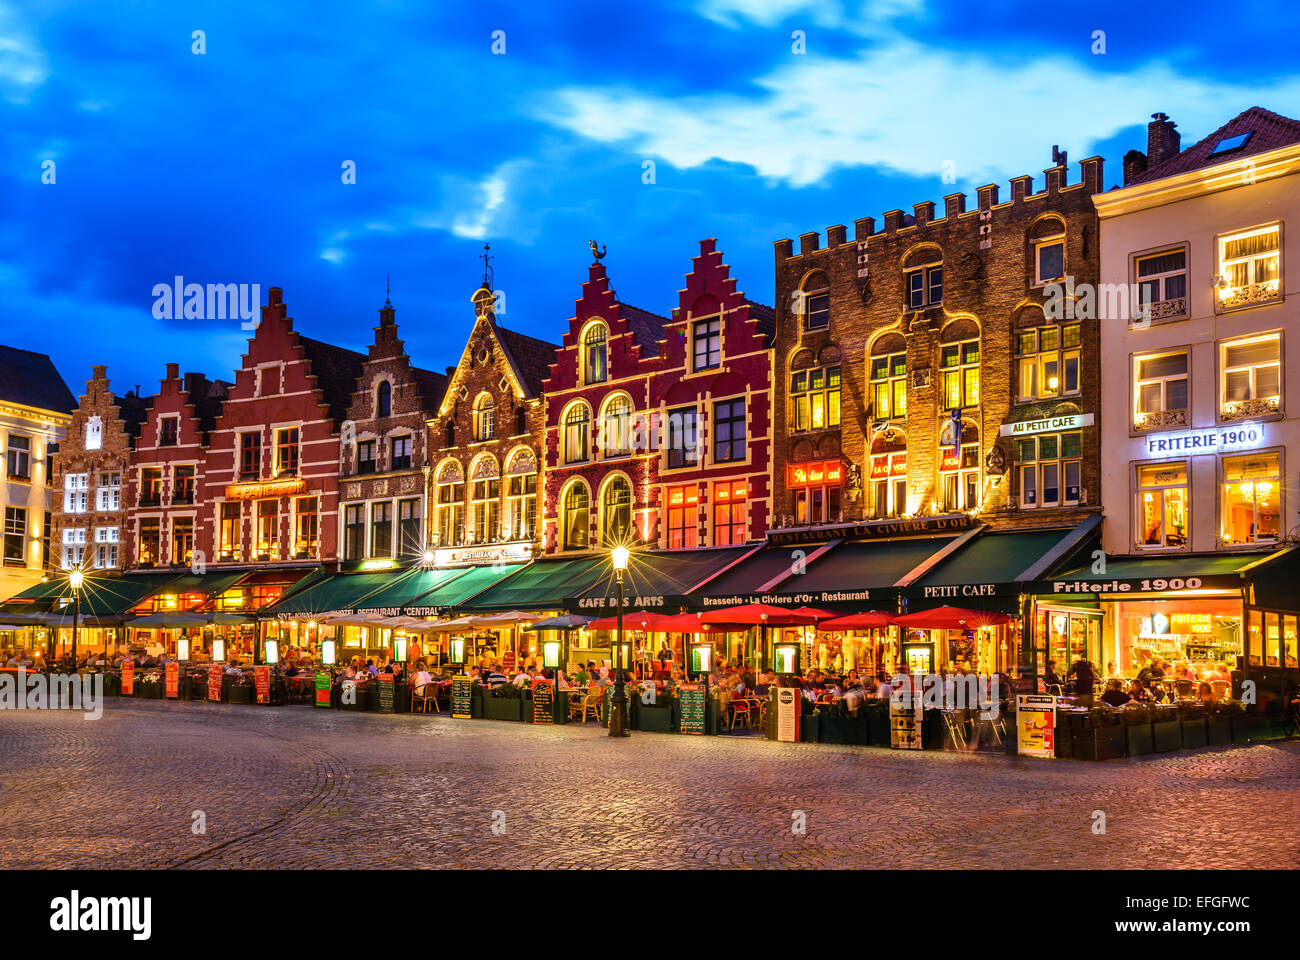 Brügge, Belgien. Nacht Bild Nordseite des Grote Markt (Markt) mit bezaubernden Straßencafes. Stockfoto